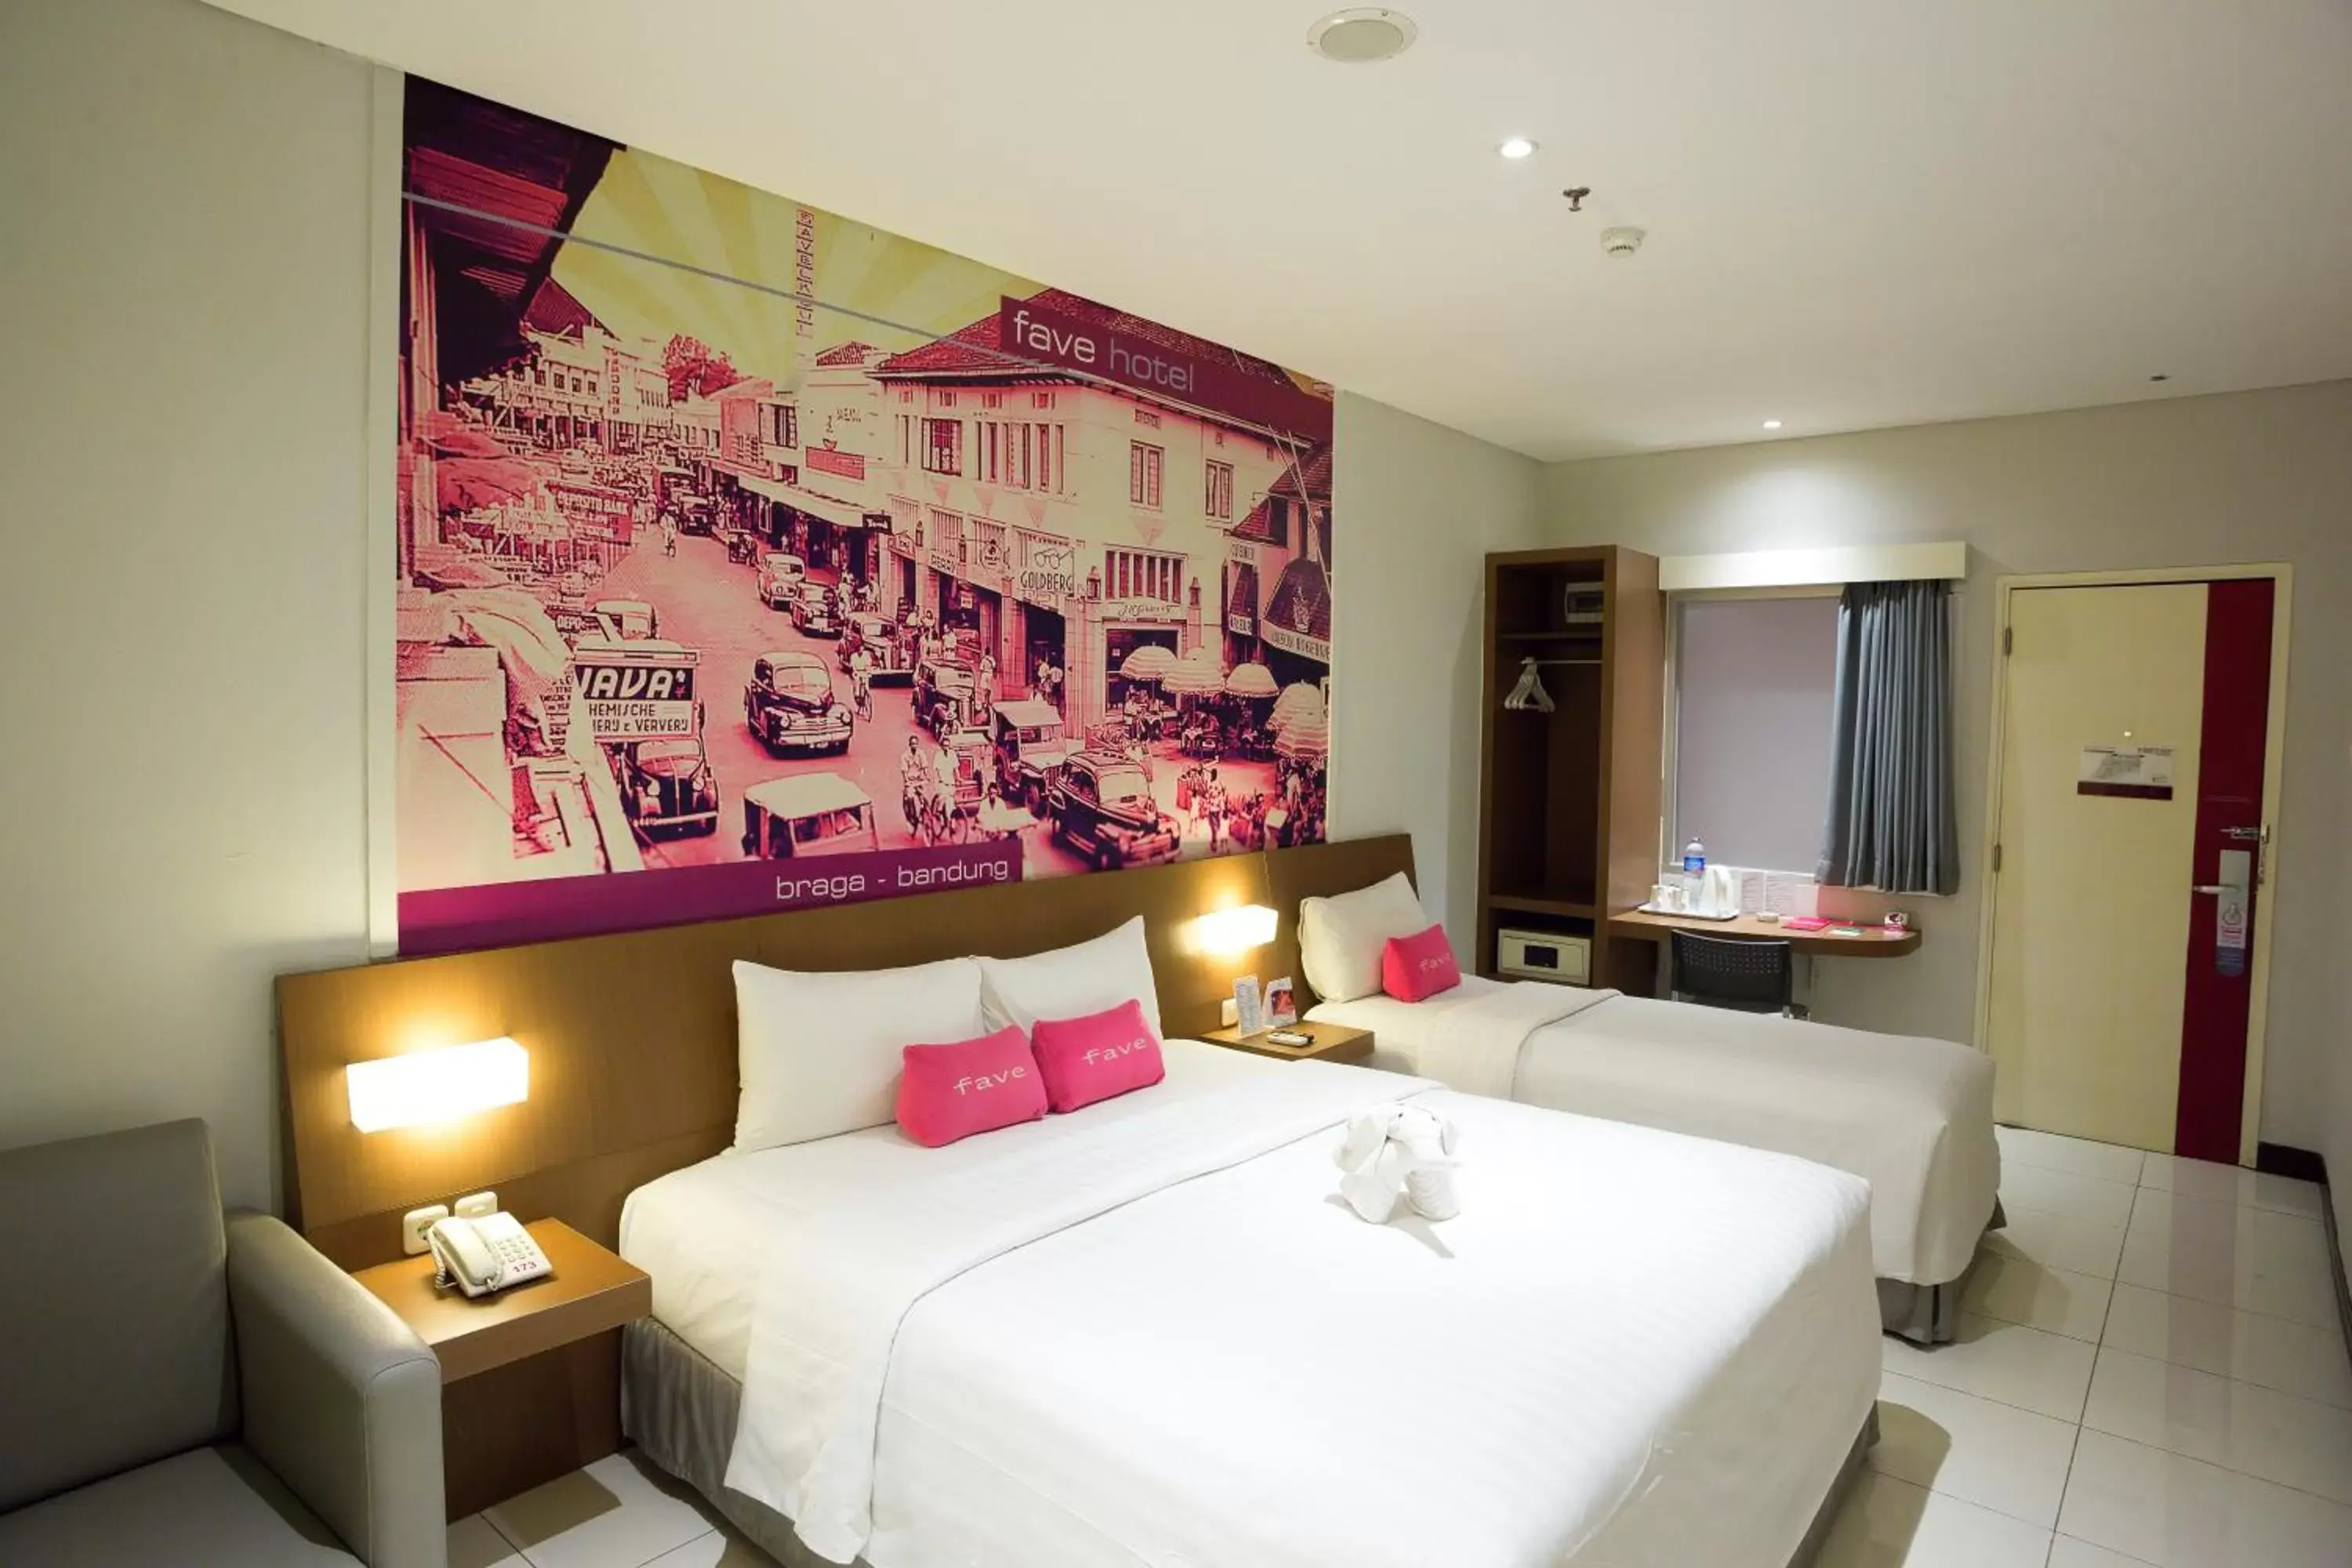 Bedroom, Bed in favehotel Braga